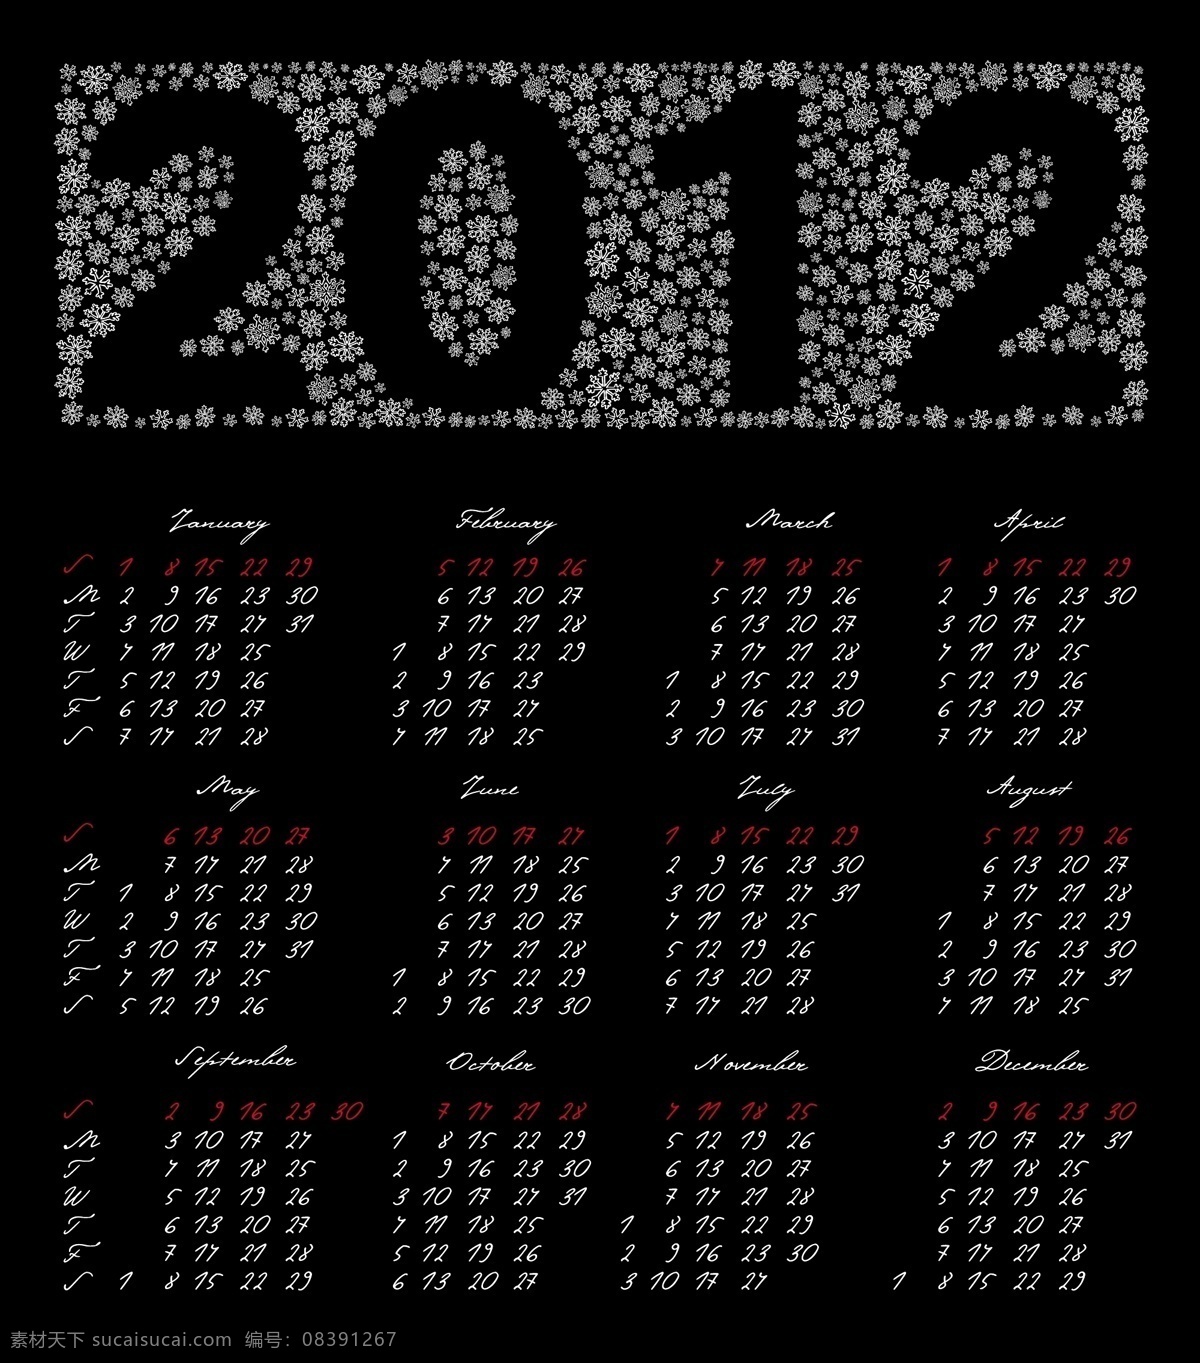 2012 年 日历 模板 年历 月历 台历 挂历模板 龙年 壬辰年 新年素材 日历台历 矢量素材 黑色